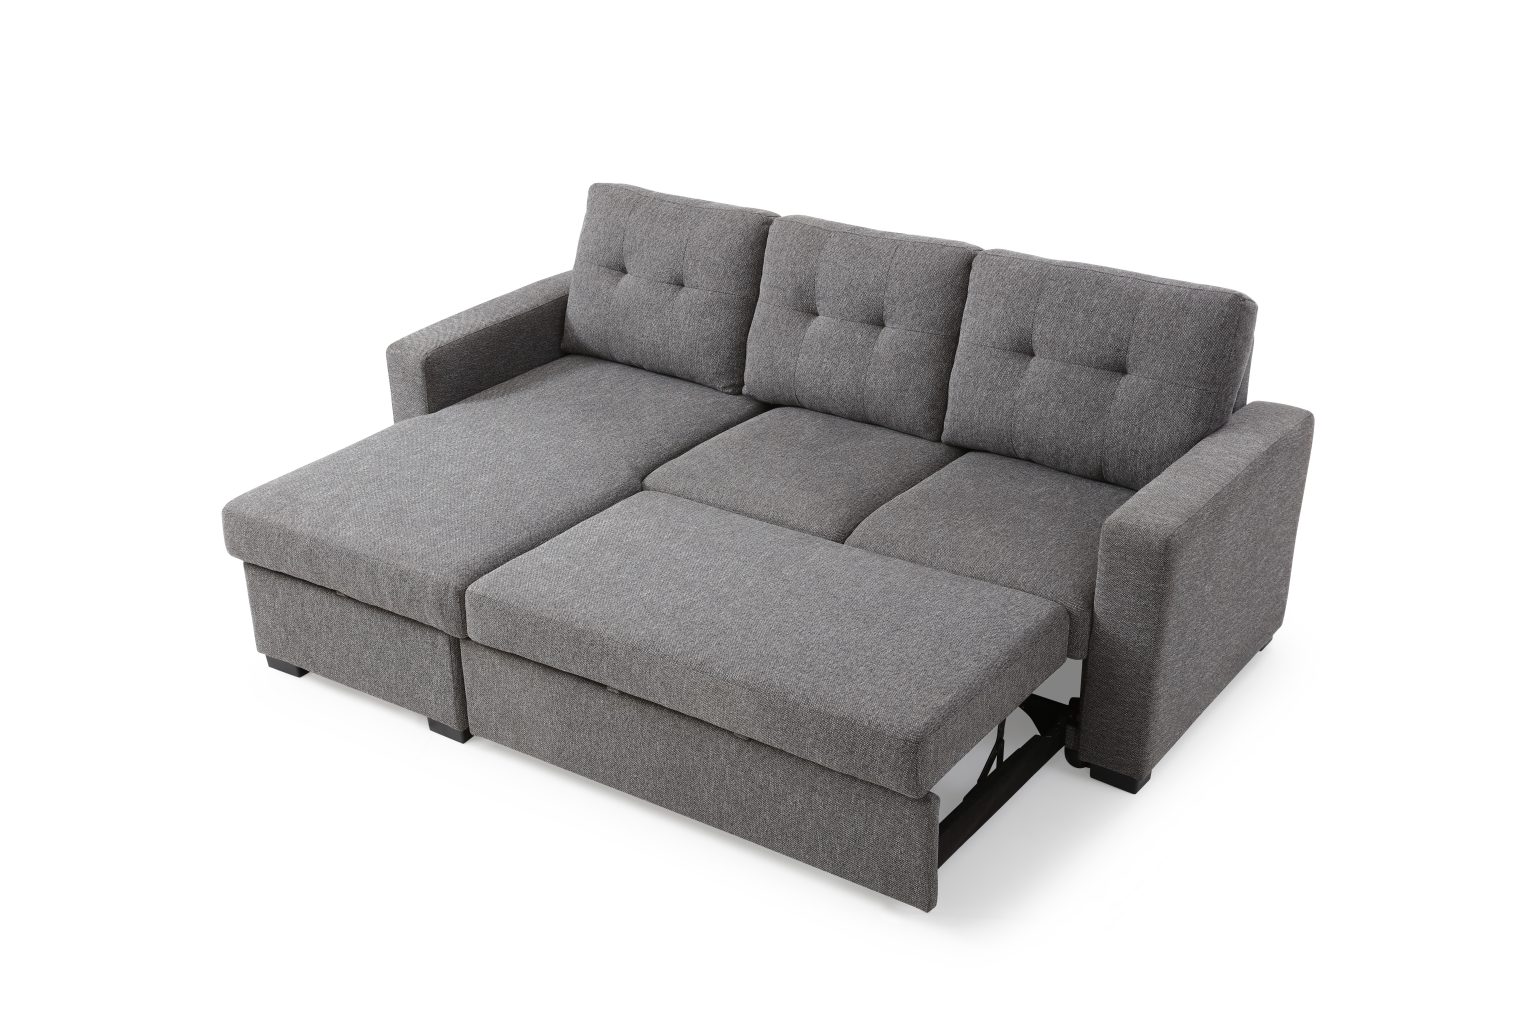 cheap sofa beds geelong